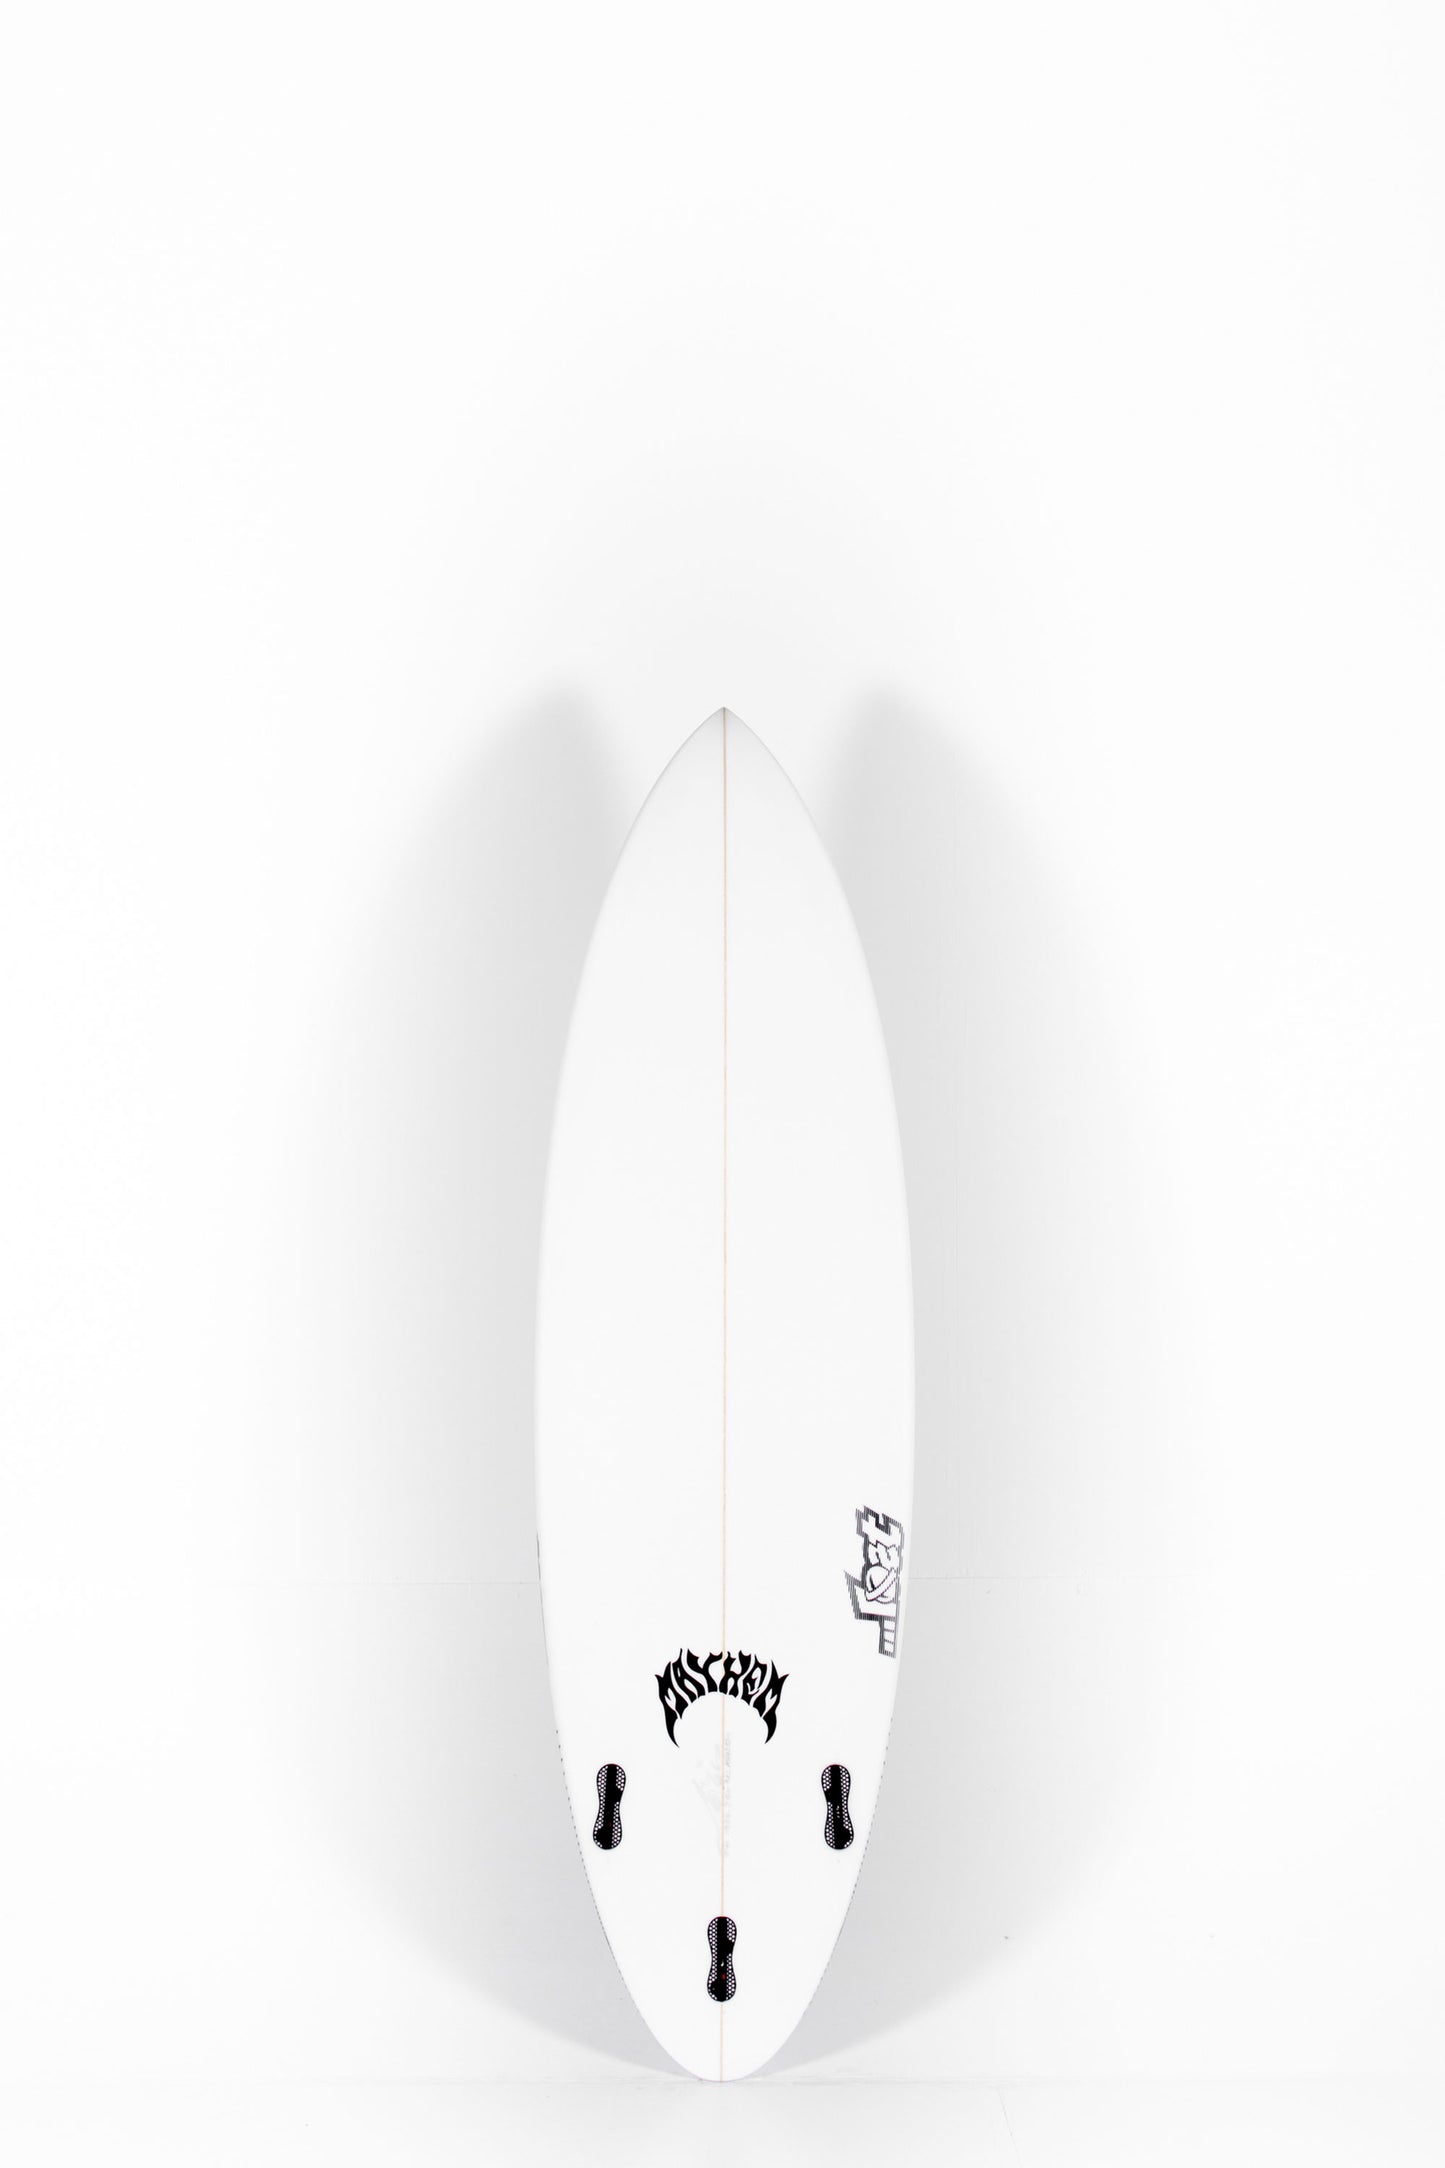 Pukas Surf Shop - Lost Surfboard - SABO TAJ by Matt Biolos - 5’11” x 19,38 x 2,5 x 31L - MH12529